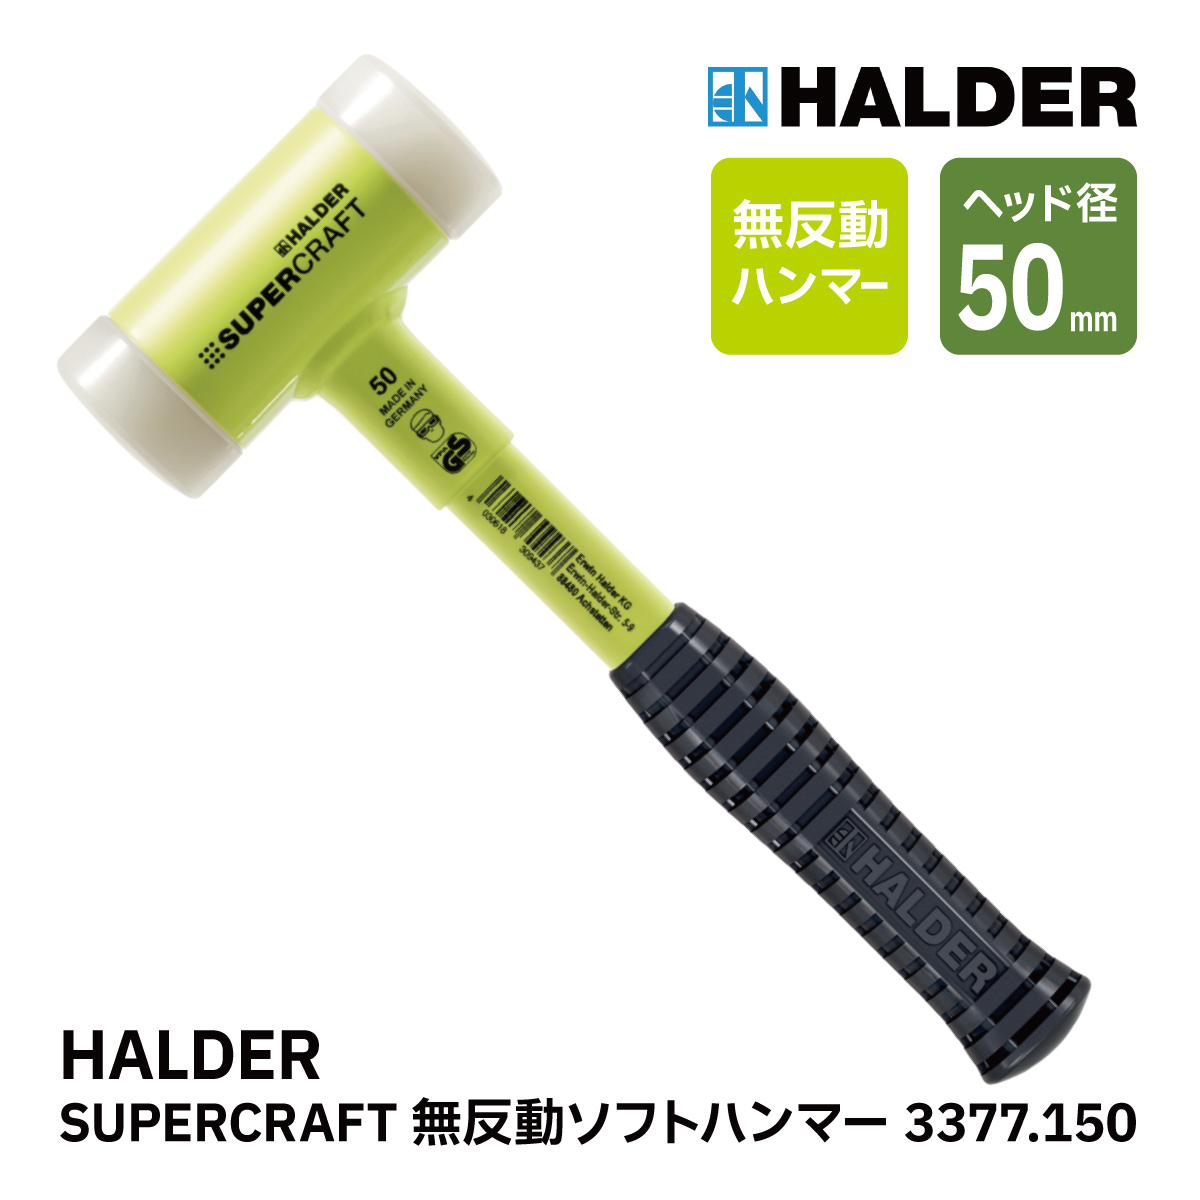 ハルダー (HALDER) ショックレス 無反動 スーパークラフト スレッジ